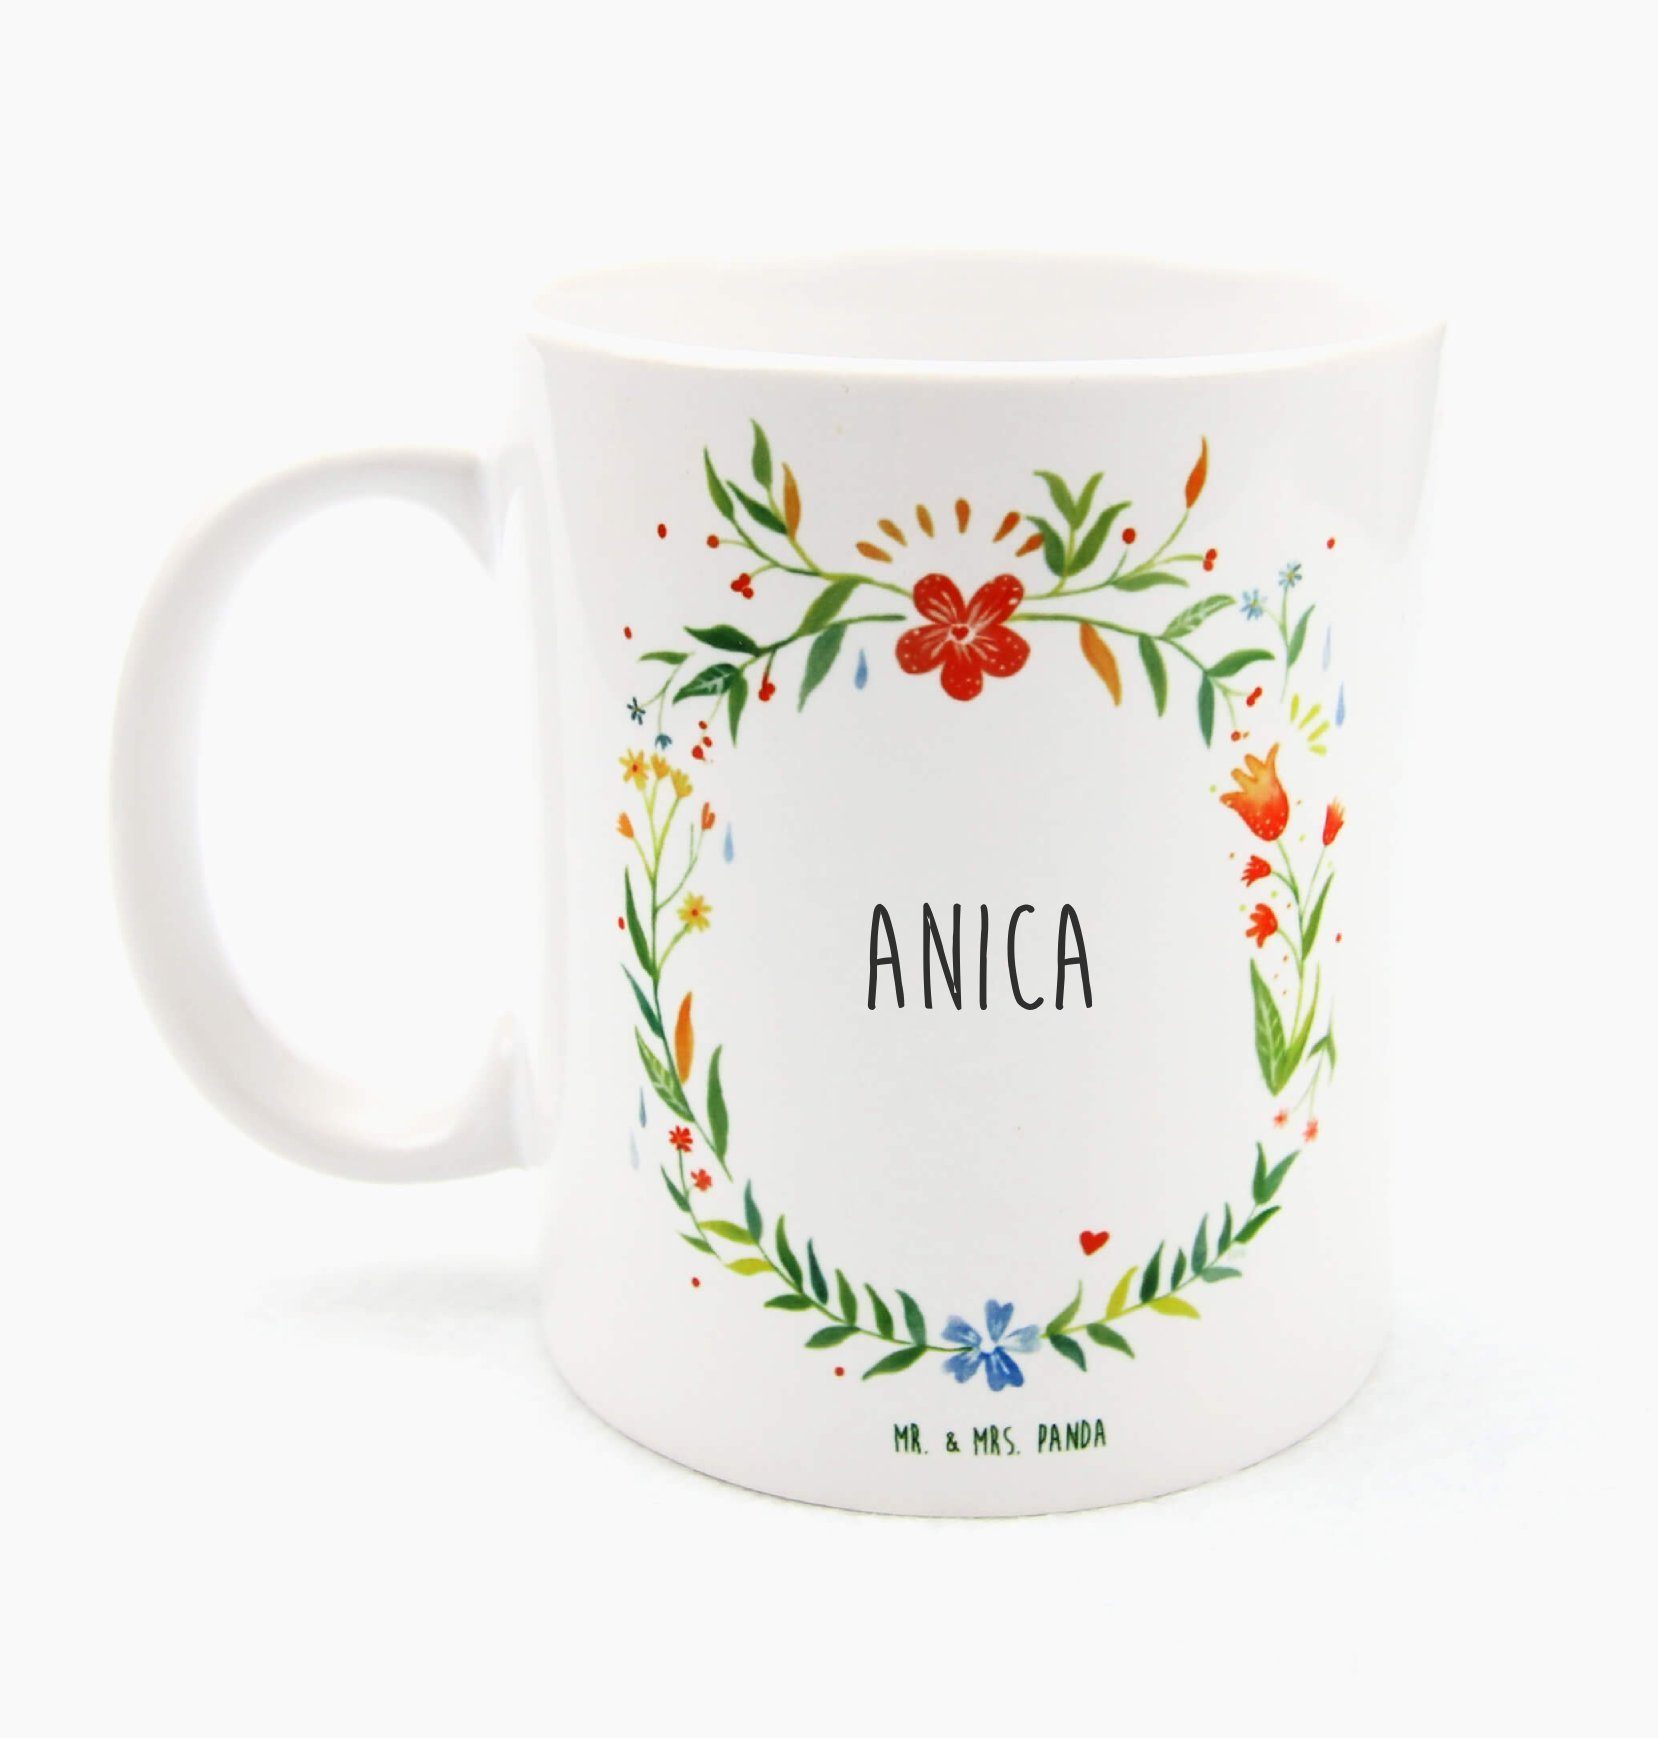 Mr. & Mrs. Panda Kaffeetasse, Tasse, - Sprüche, Tasse Keramik Geschenk Geschenk, Anica Tasse Ta, Büro